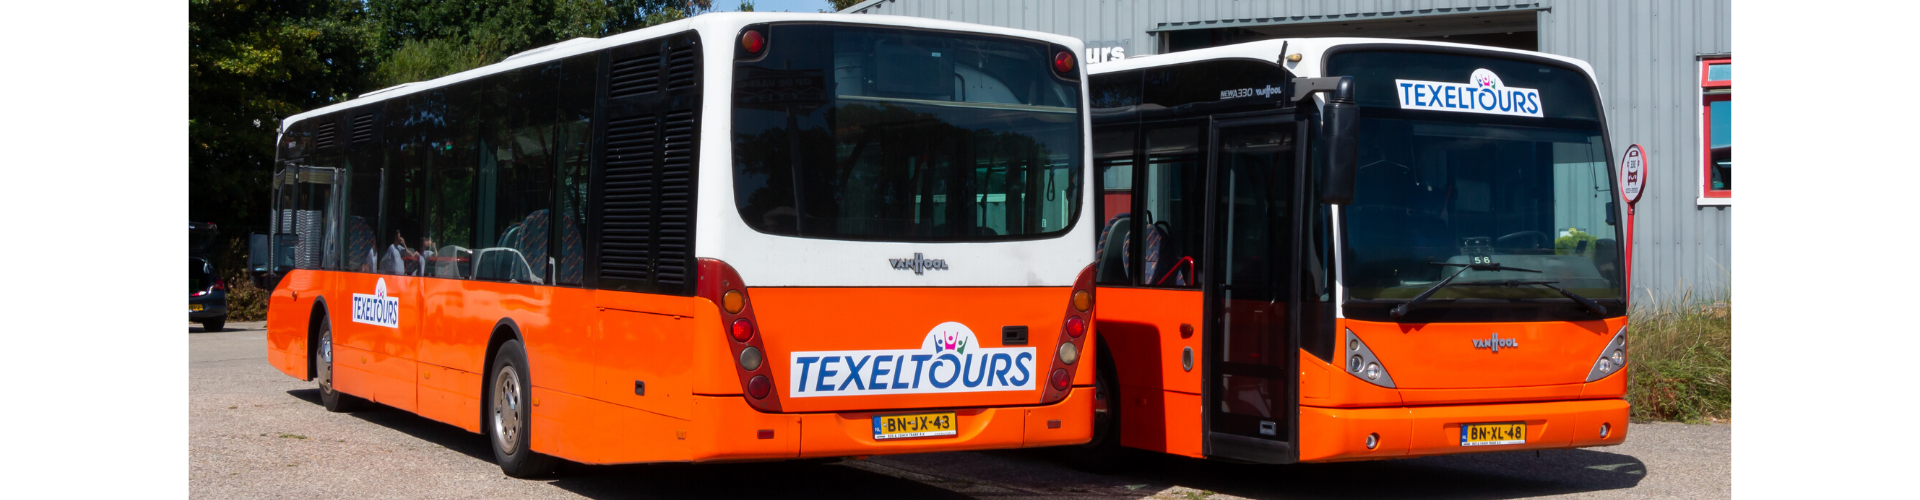 bussen voor busvervoer texel